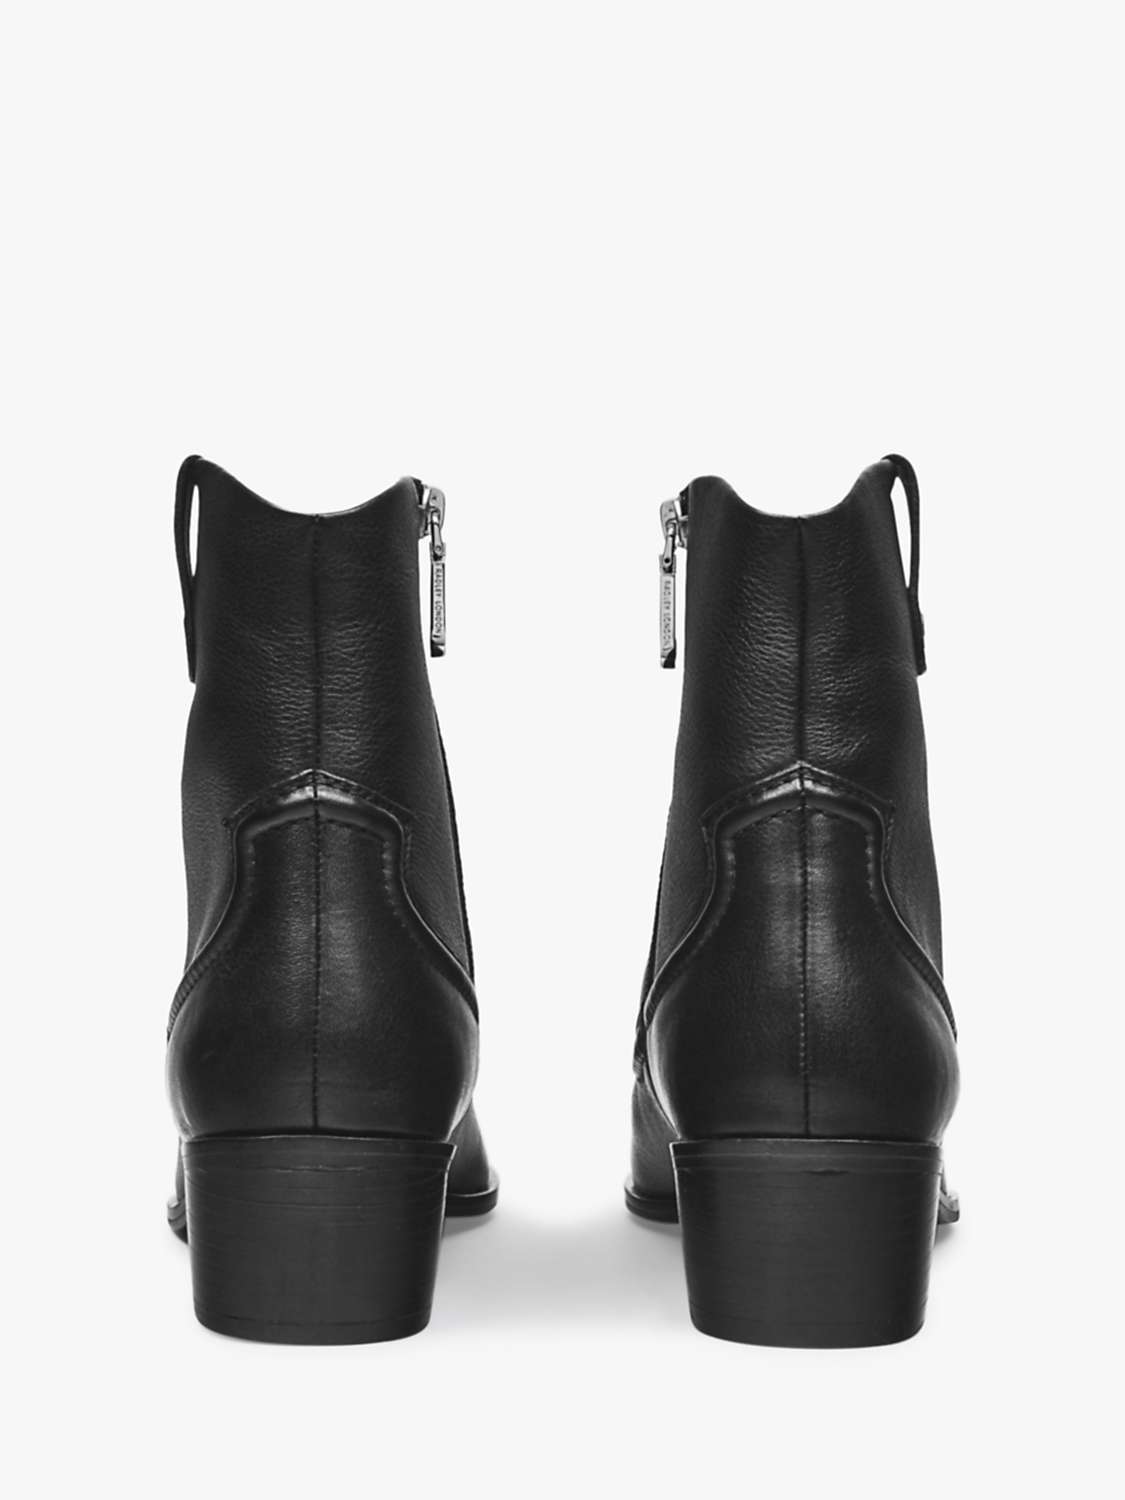 Buy Radley Farrier Walk Westen Ankle Boots, Black Online at johnlewis.com